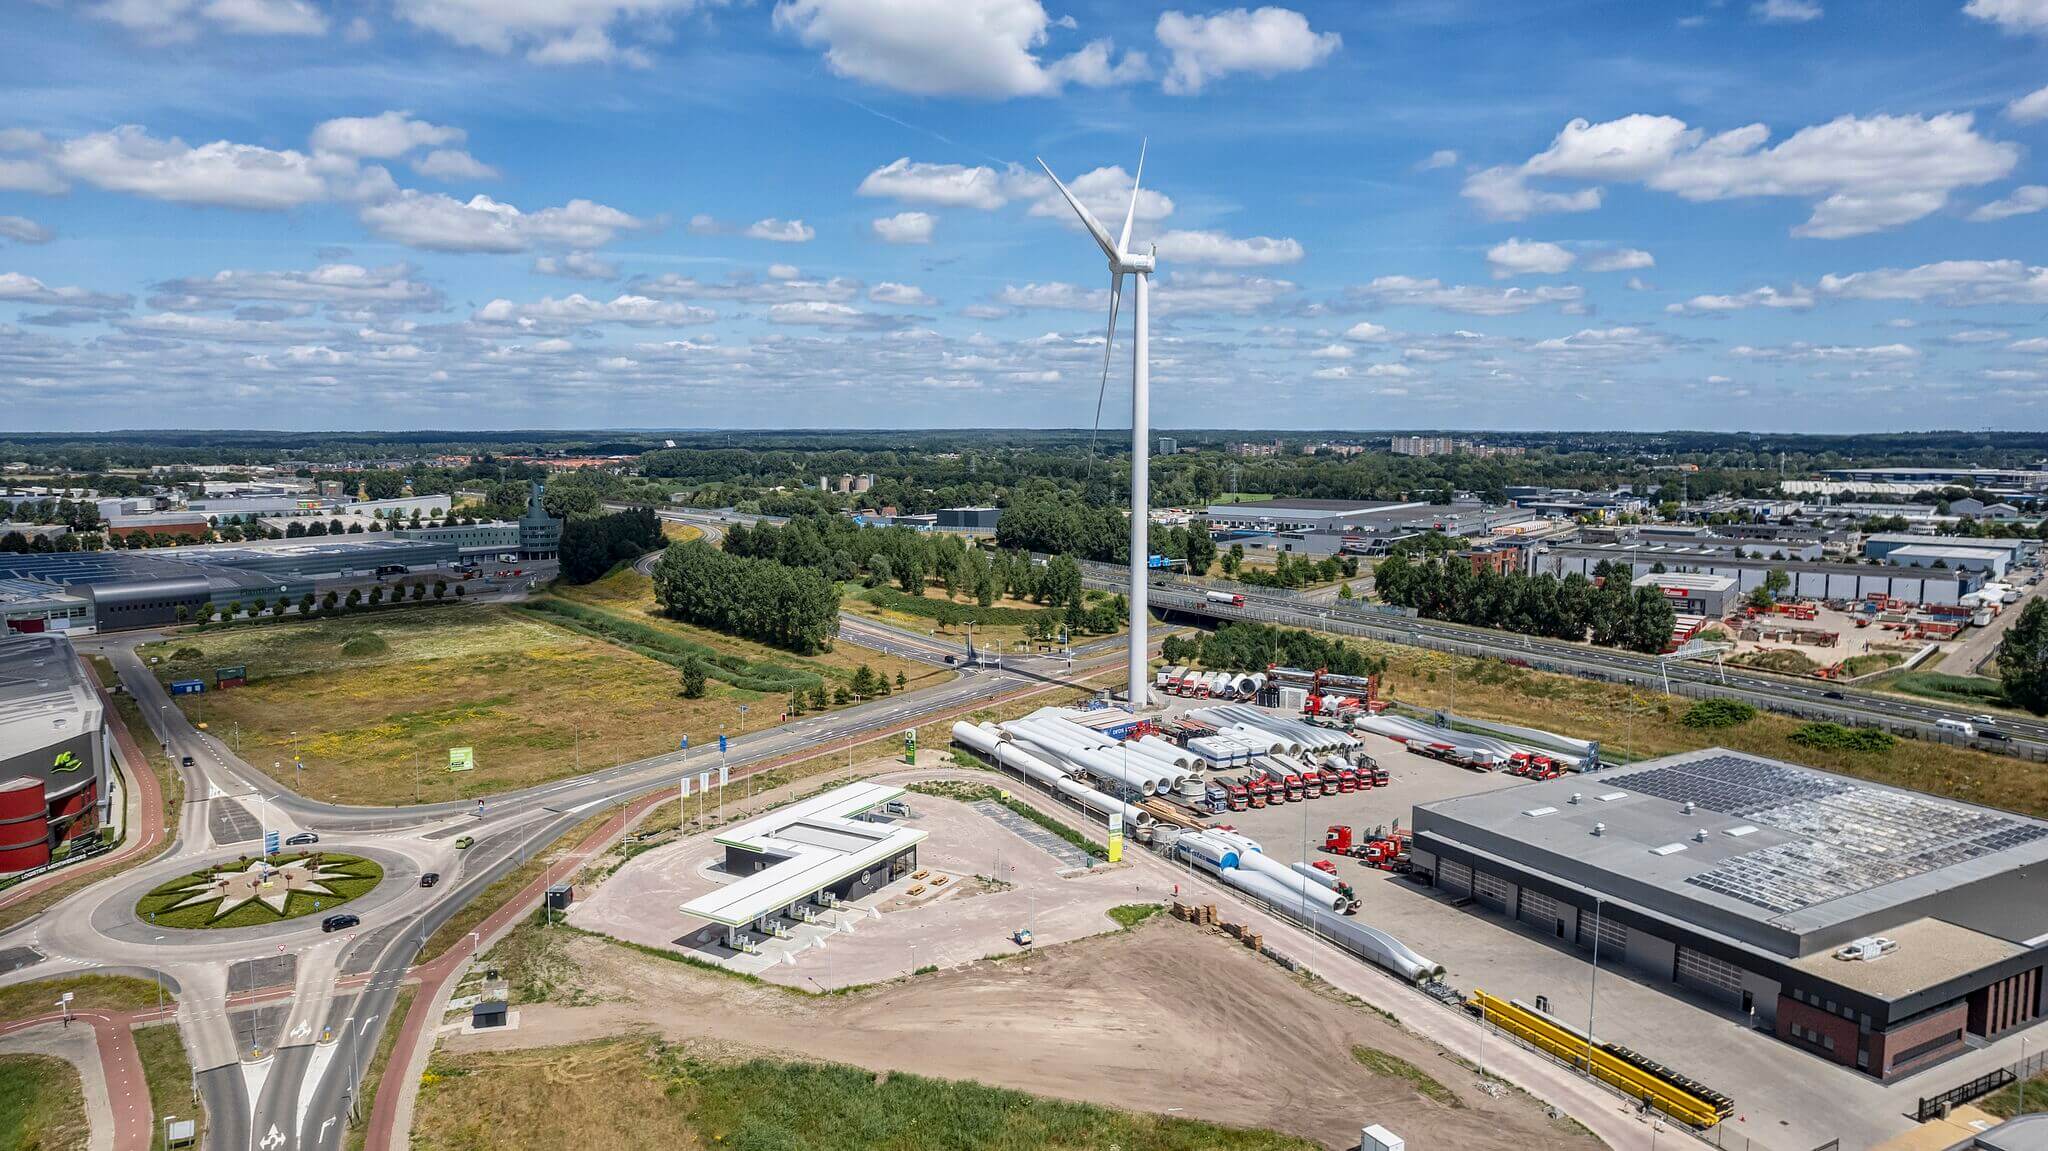 Greenpoint открывает новый CLEAN ENERGY HUB в Эде (Нидерланды) с экологически чистыми видами топлива